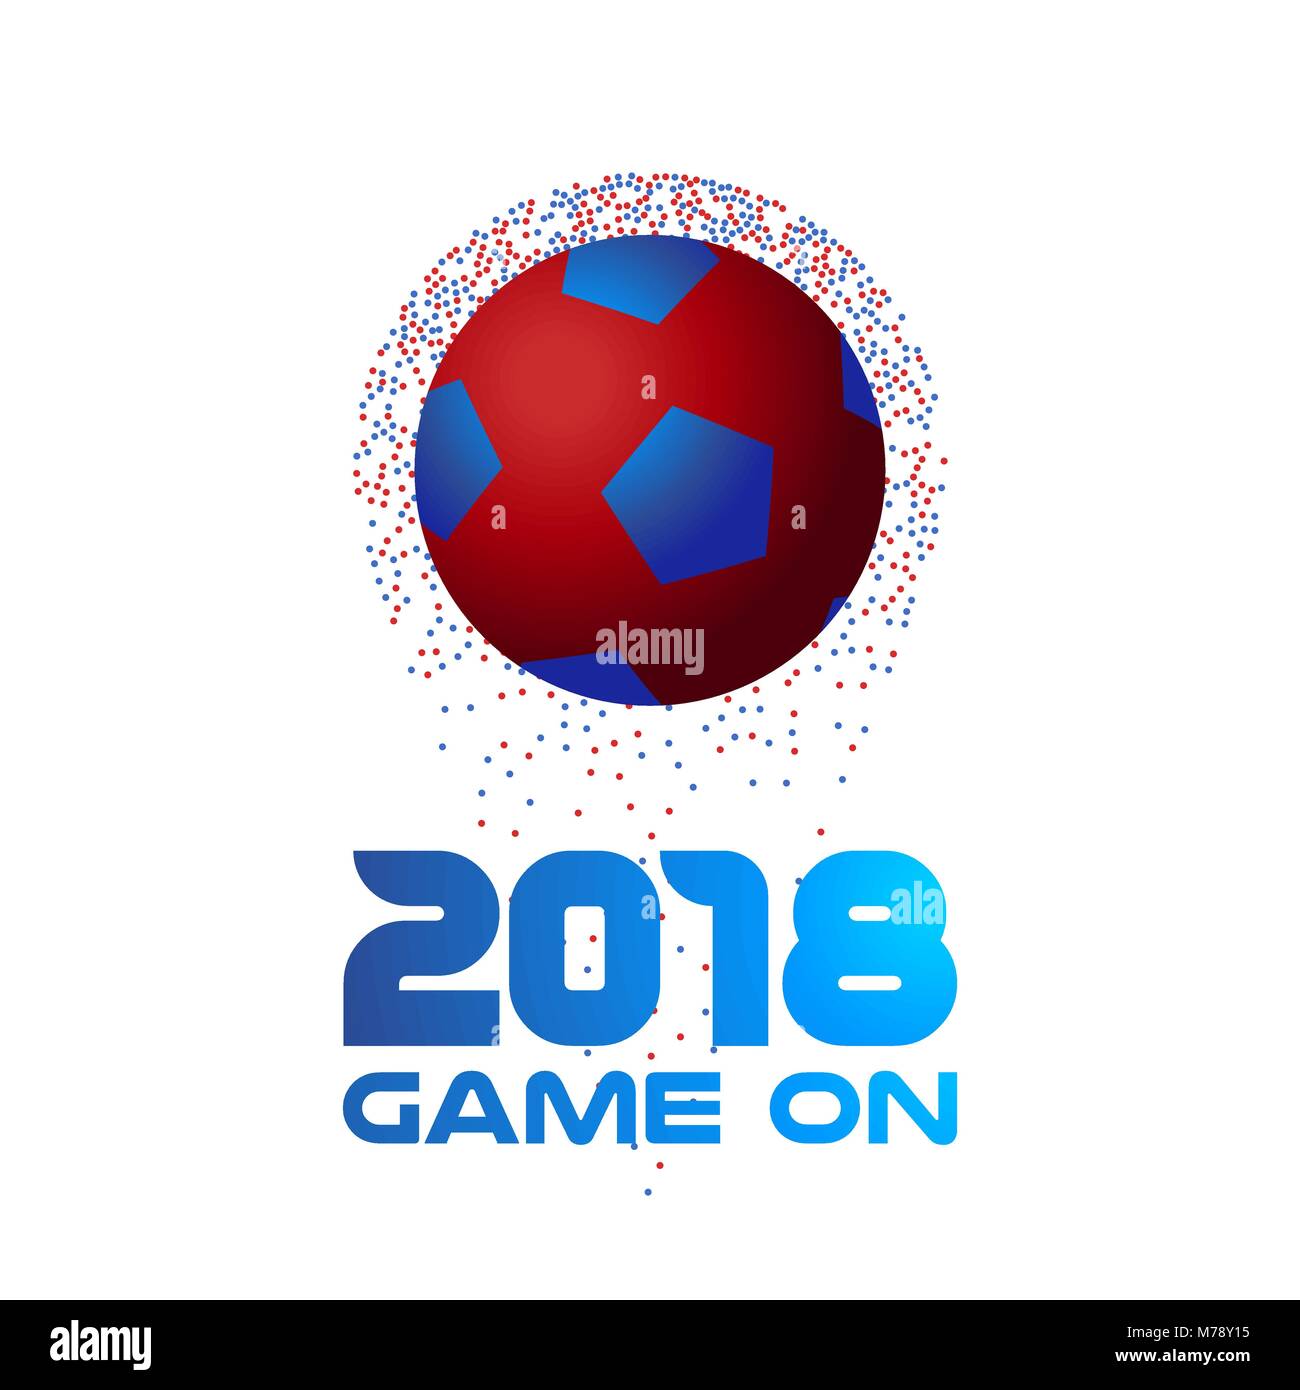 Fußball der bunte Punkte mit der Typografie 2018 vorgenommen wurden. Ideal für ein Fußballspiel oder Sport Event. EPS 10 Vektor. Stock Vektor